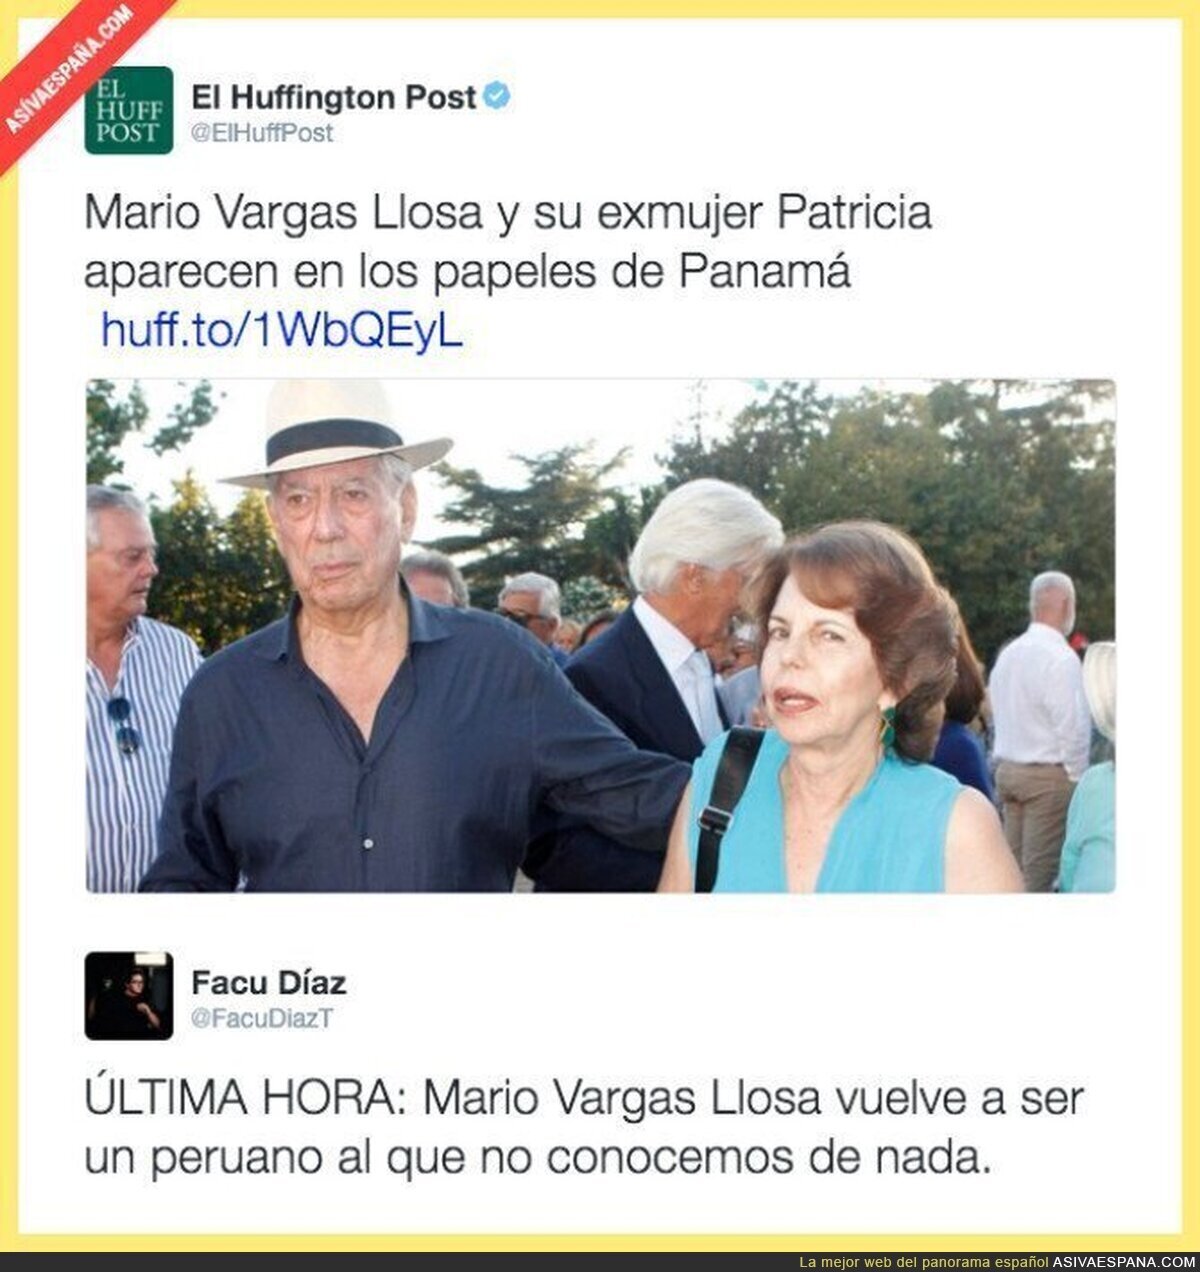 Vargas Llosa también aparece en los papeles de Panamá. Sorpresa